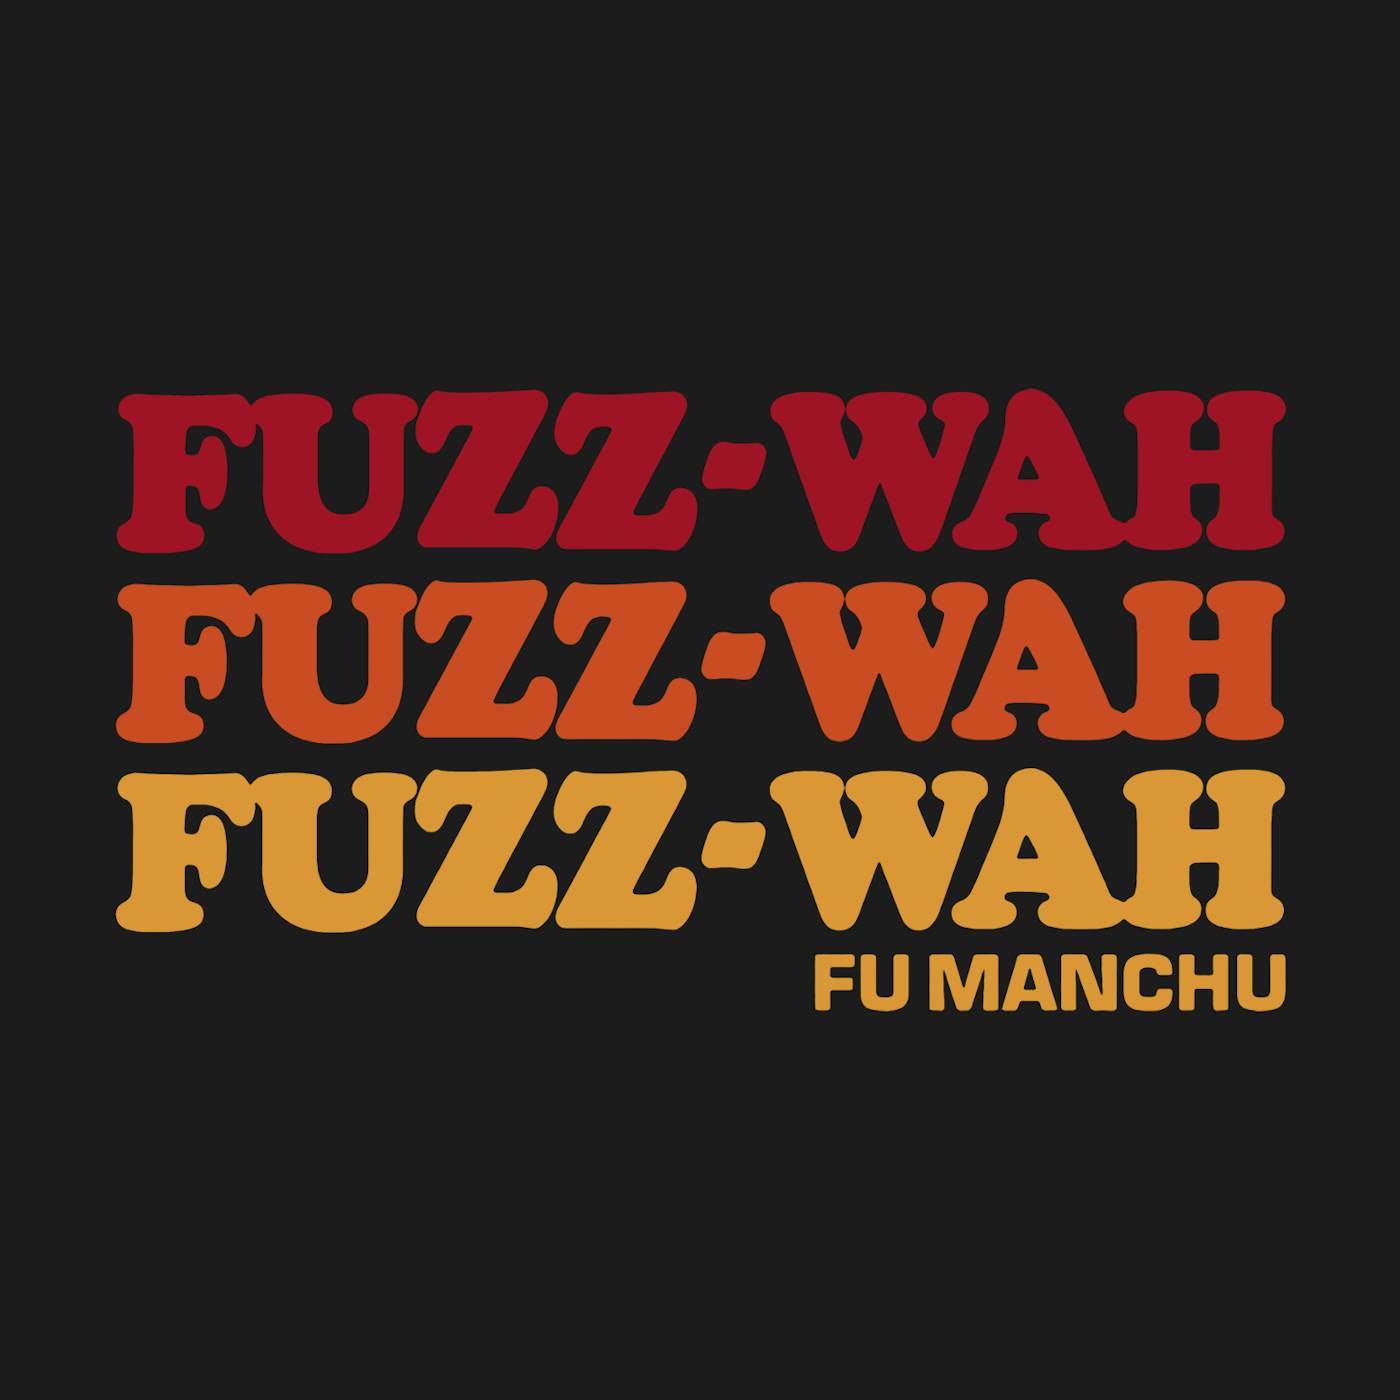 Fu Manchu T-Shirt | Fuzz-Wah Fu Manchu Shirt